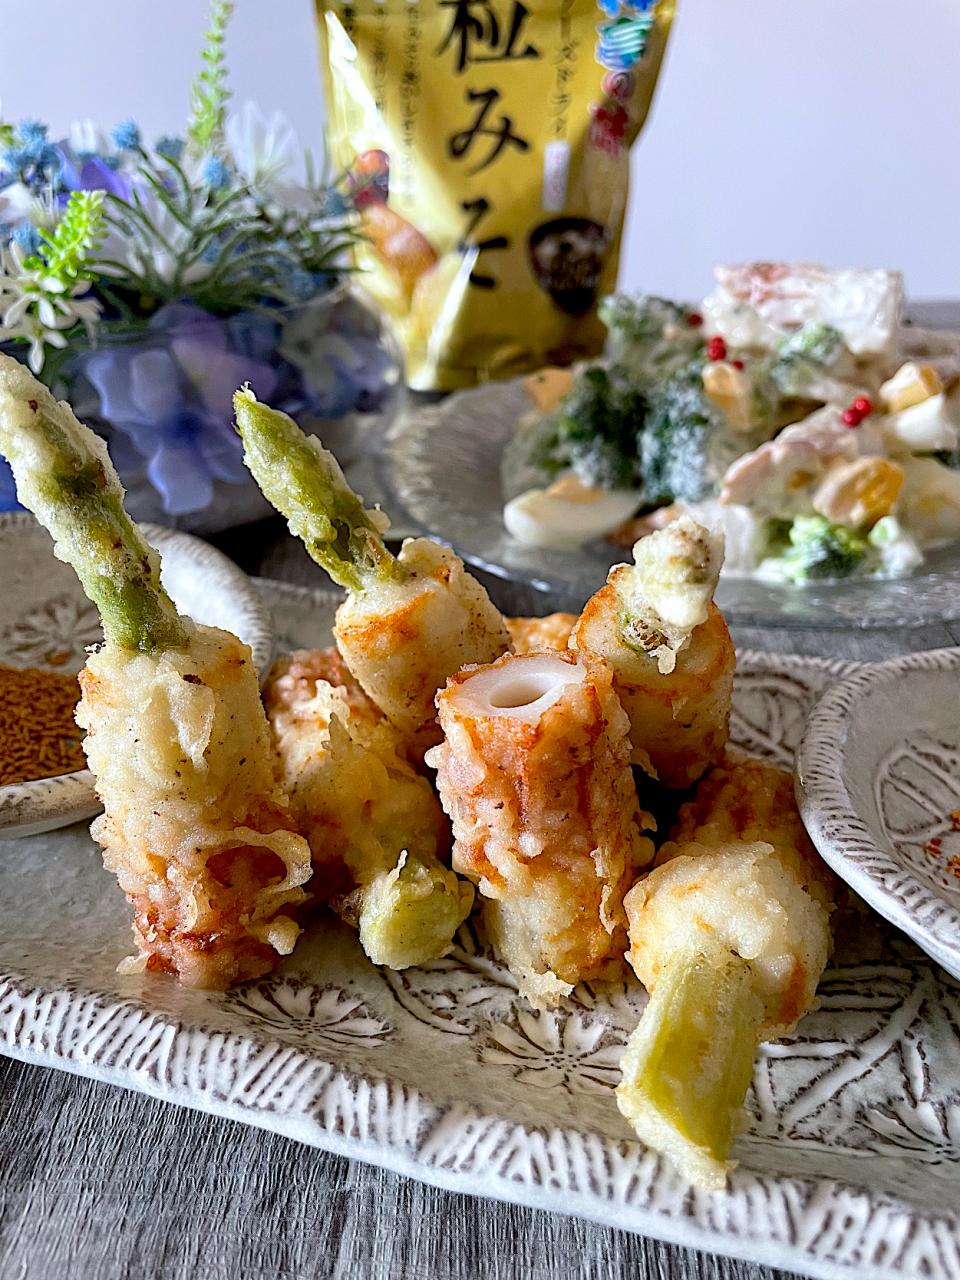 あーるさんの料理 6/7 アスパラ入り竹輪天ぷらandちくわサラダでお誕生日おめでとうございます🎂🎉